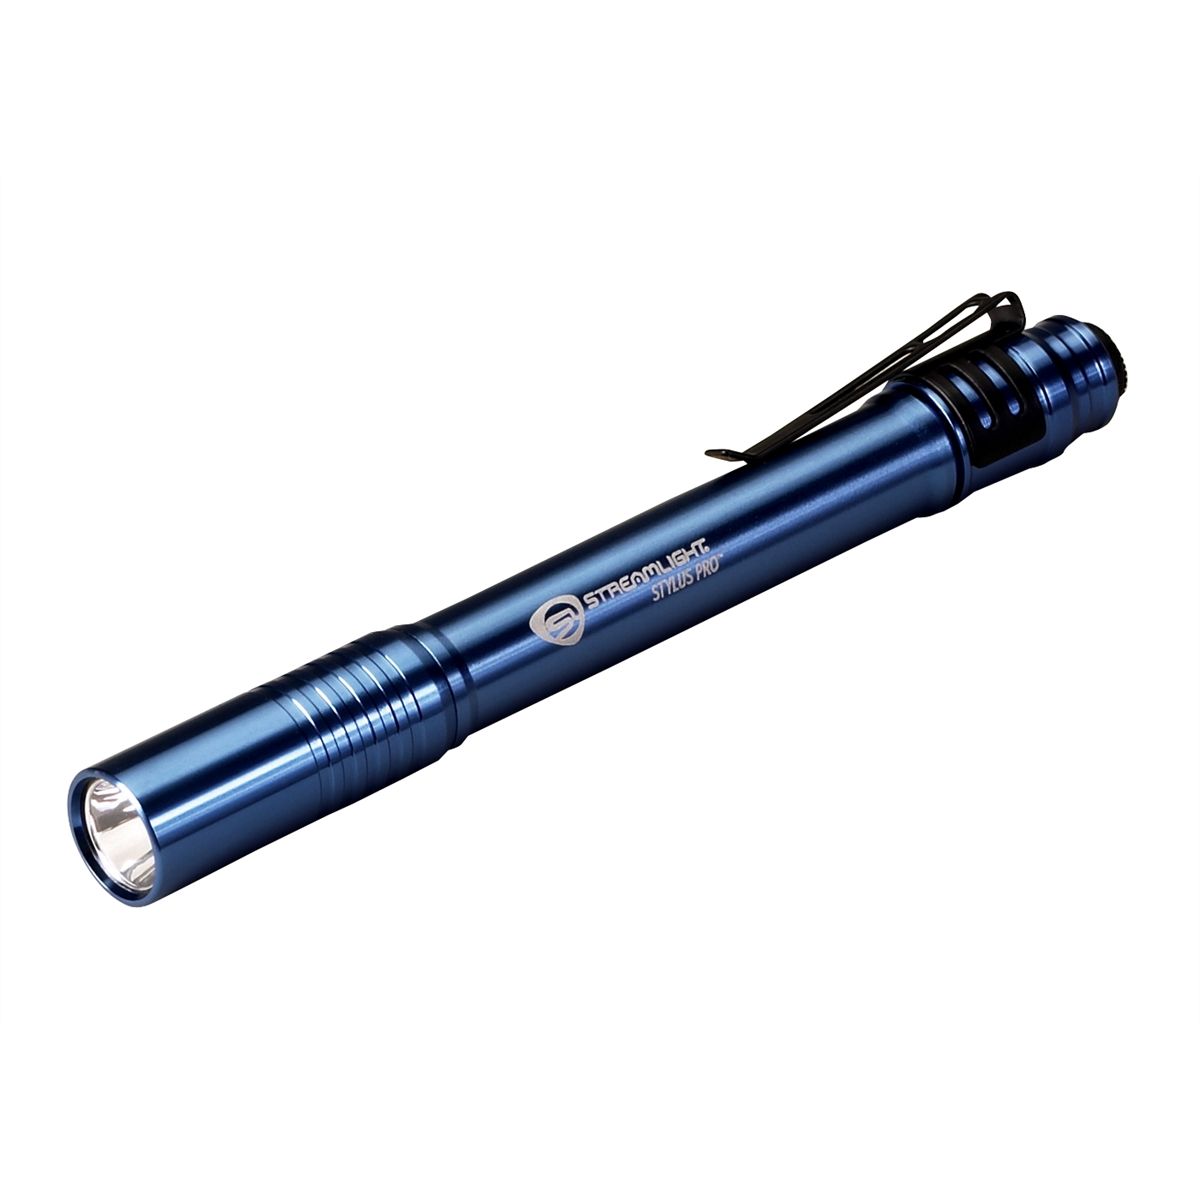 Stylus Pro Penlight with White LED (Blue)